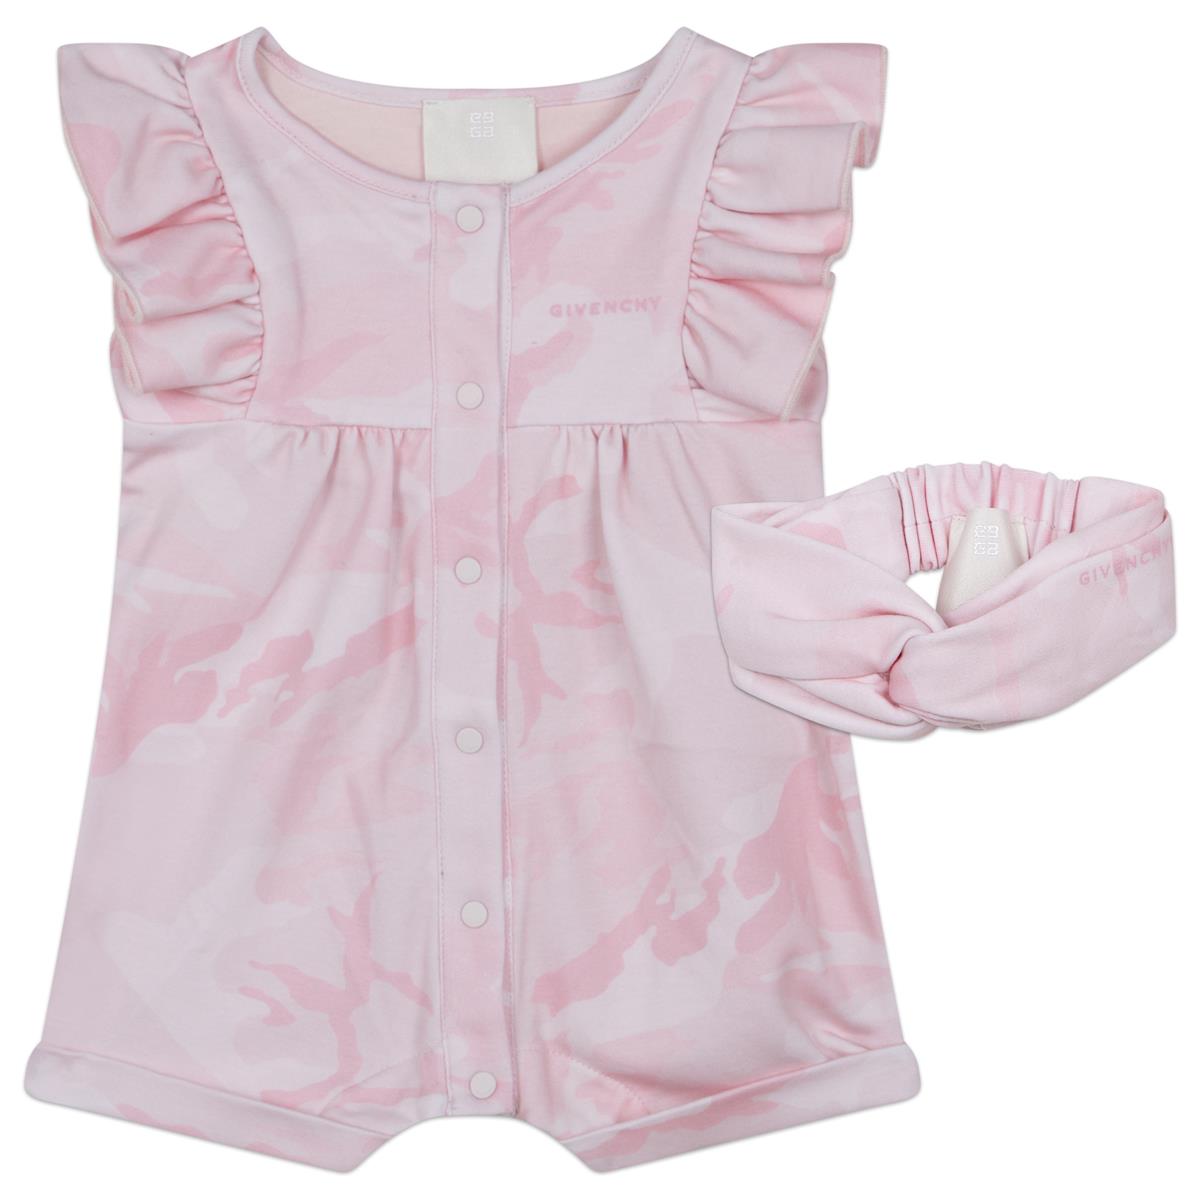 Baby Girls Pink Babysuit Set